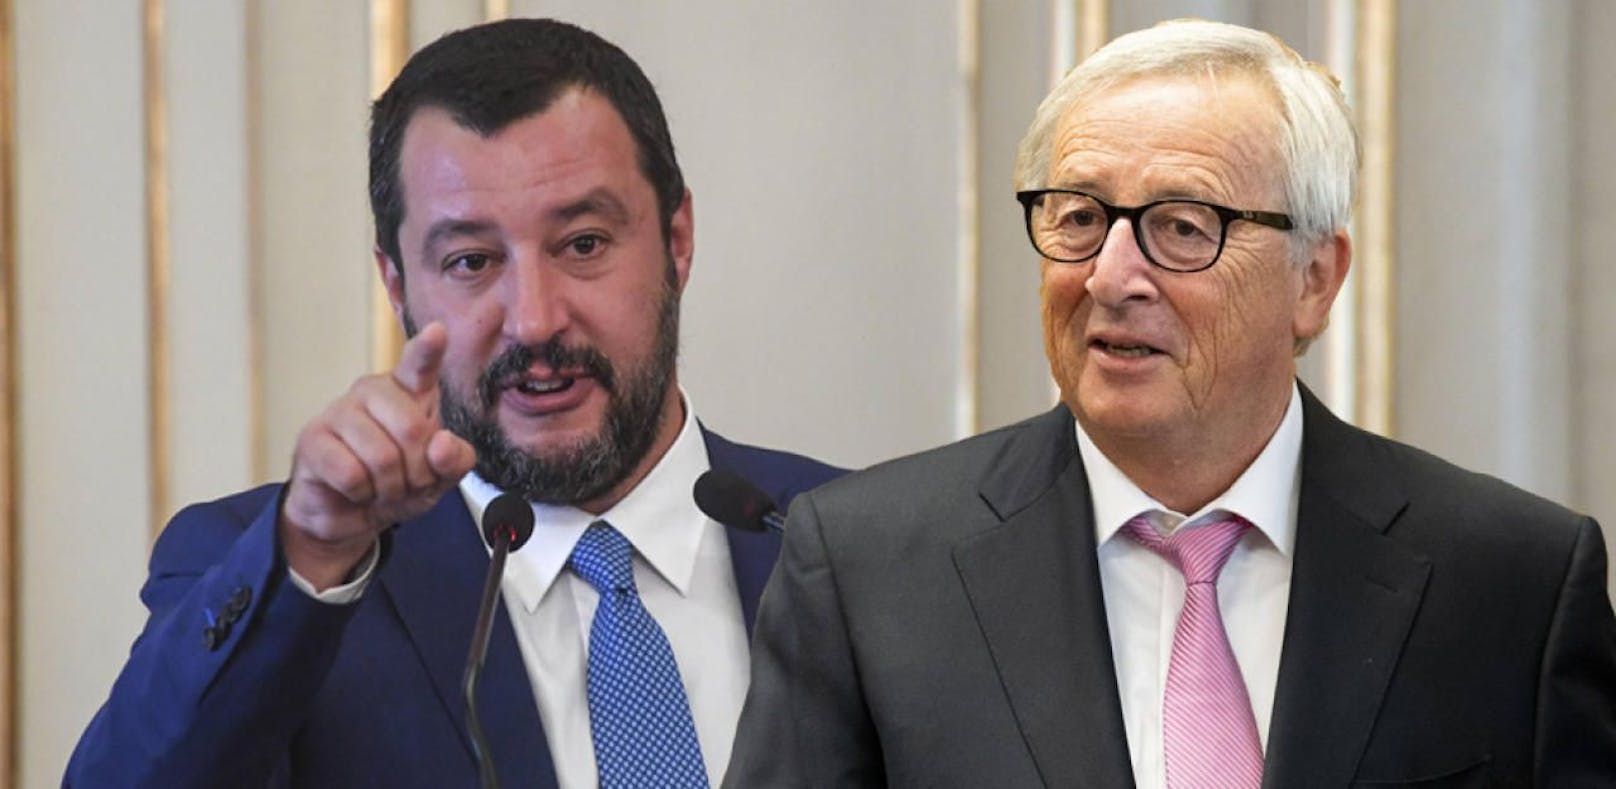 Salvini erwägt Junckers Nachfolger zu werden. 